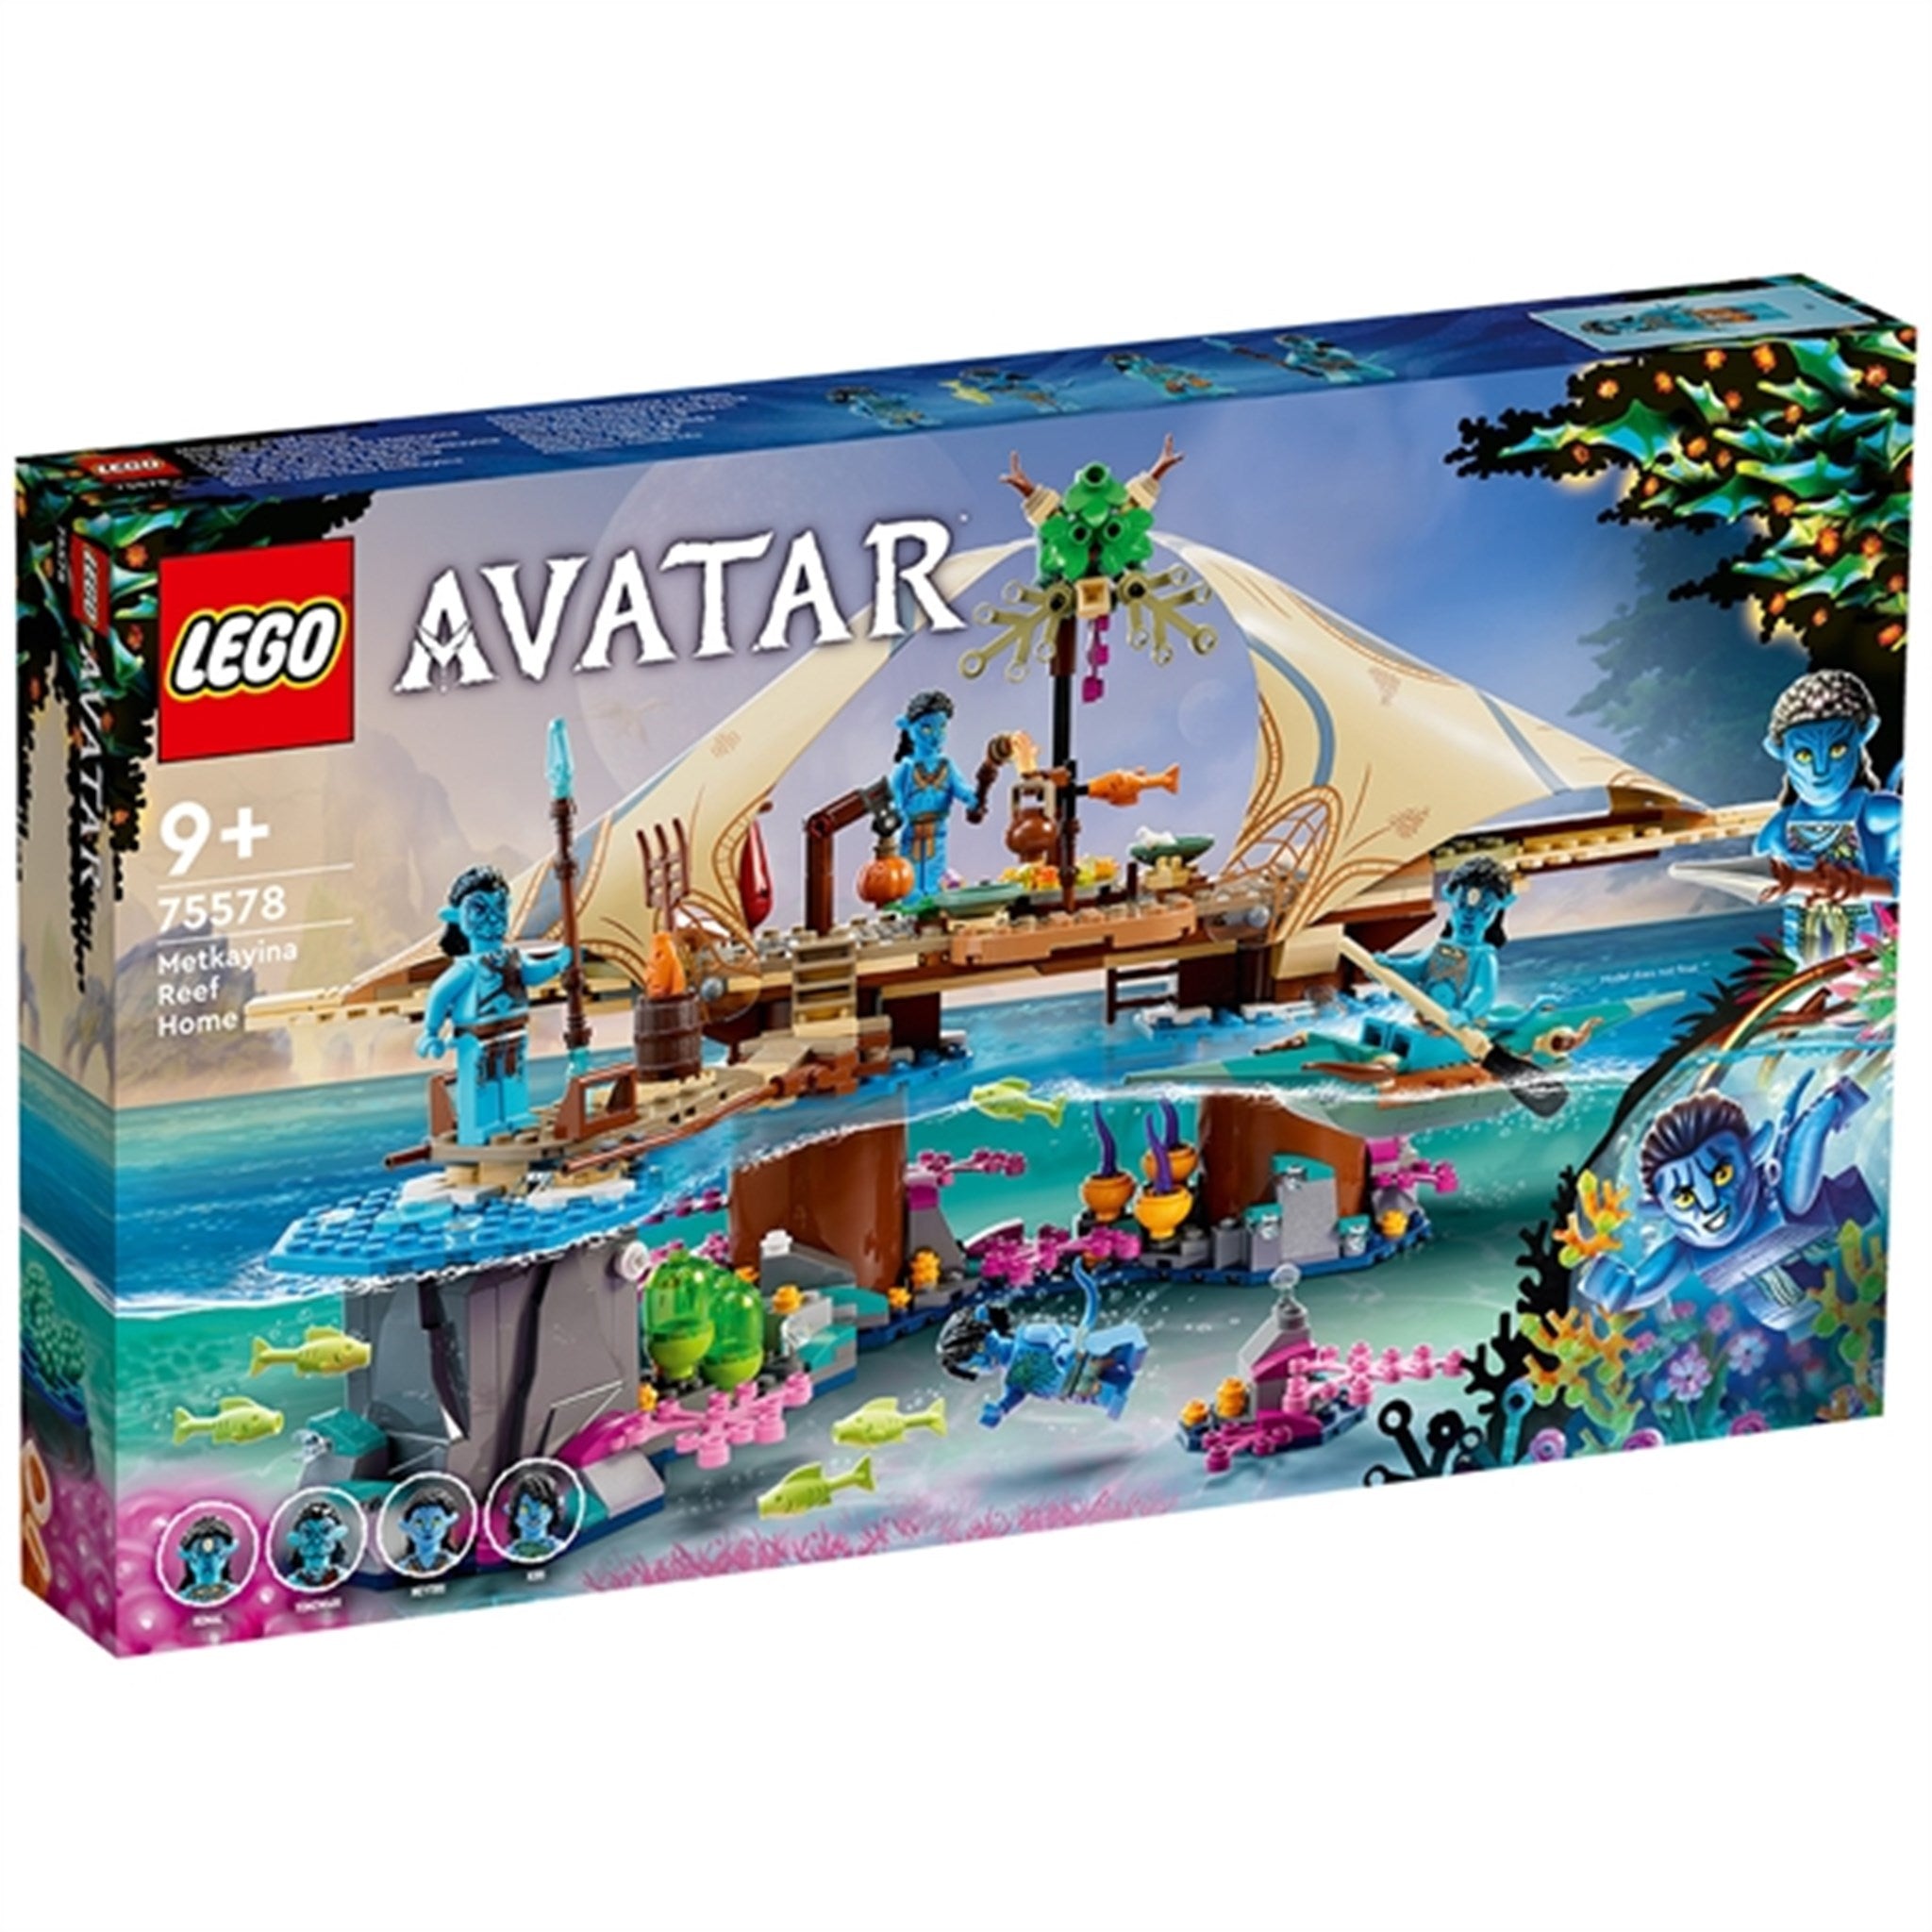 LEGO® Avatar Metkayina Klanens Korallby